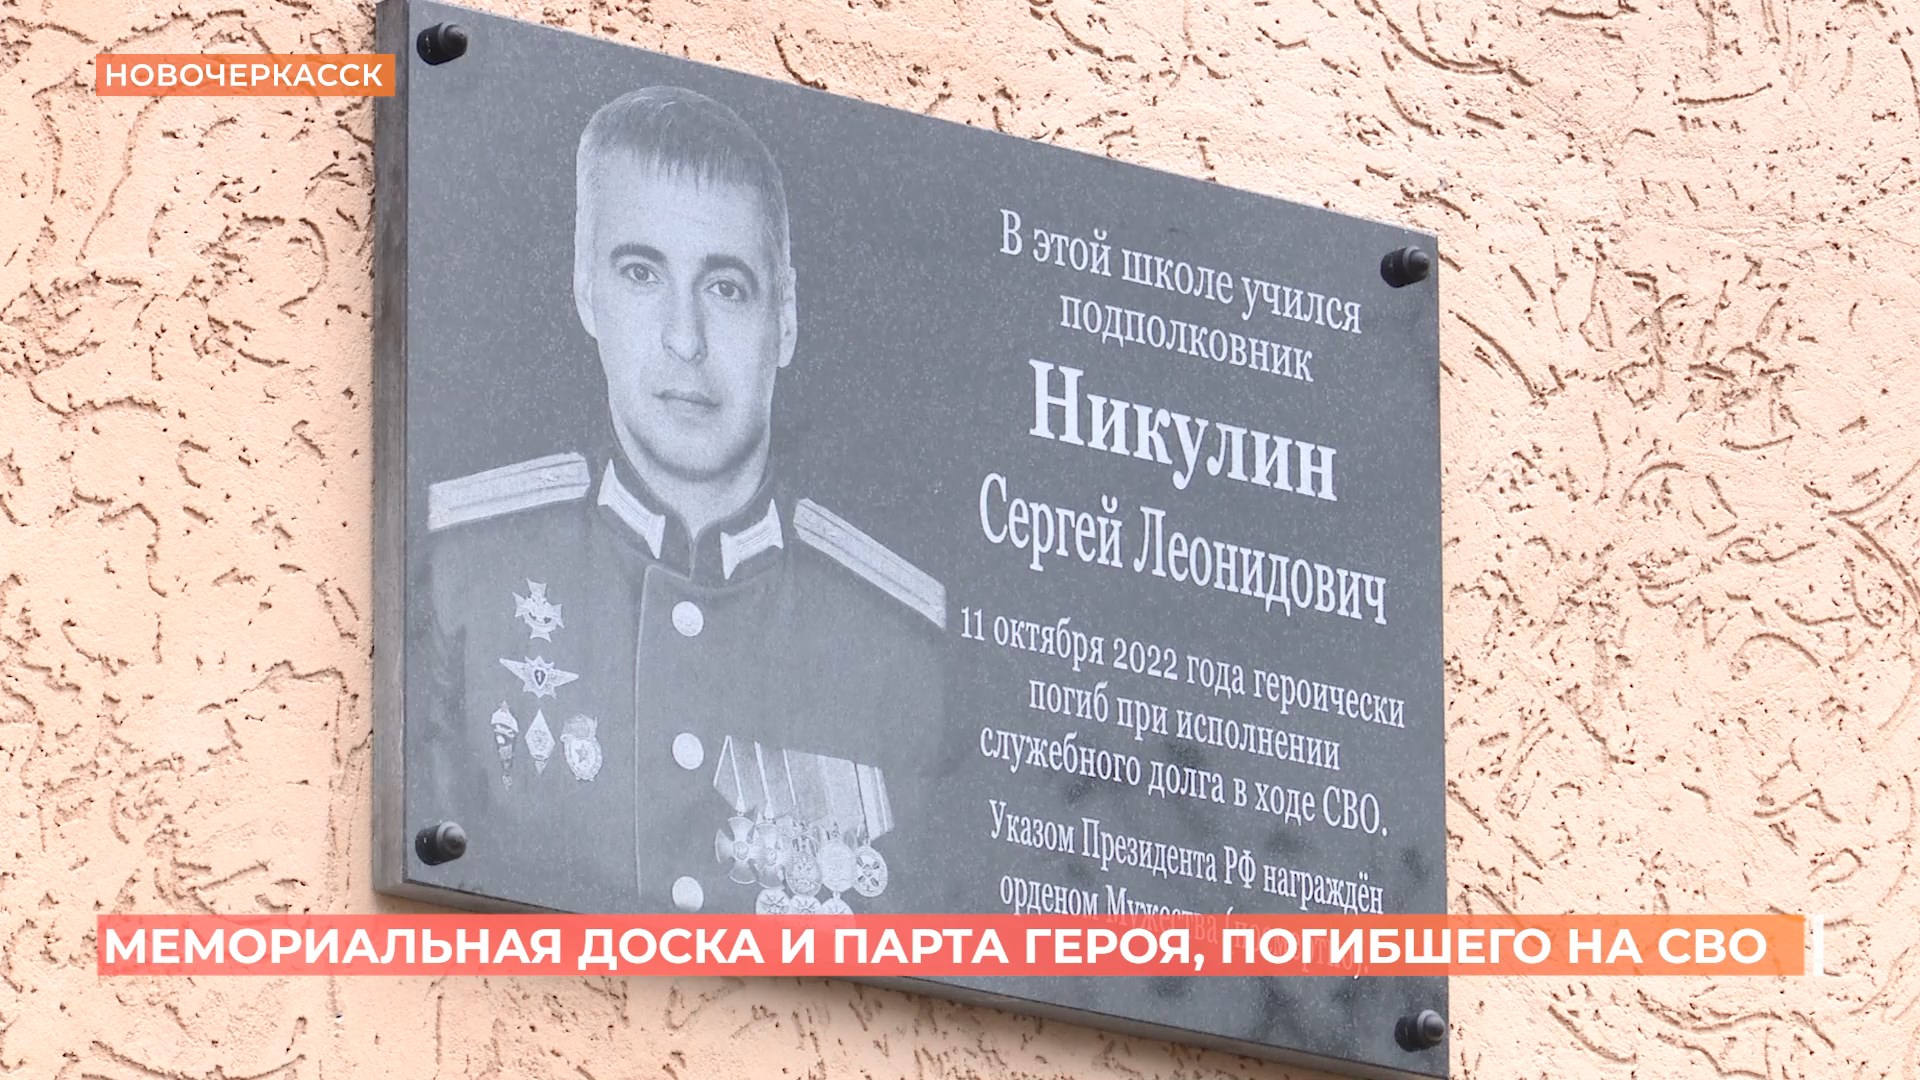 Мемориальную доску и парту героя открыли в Новочеркасске участнику СВО Сергею Никулину